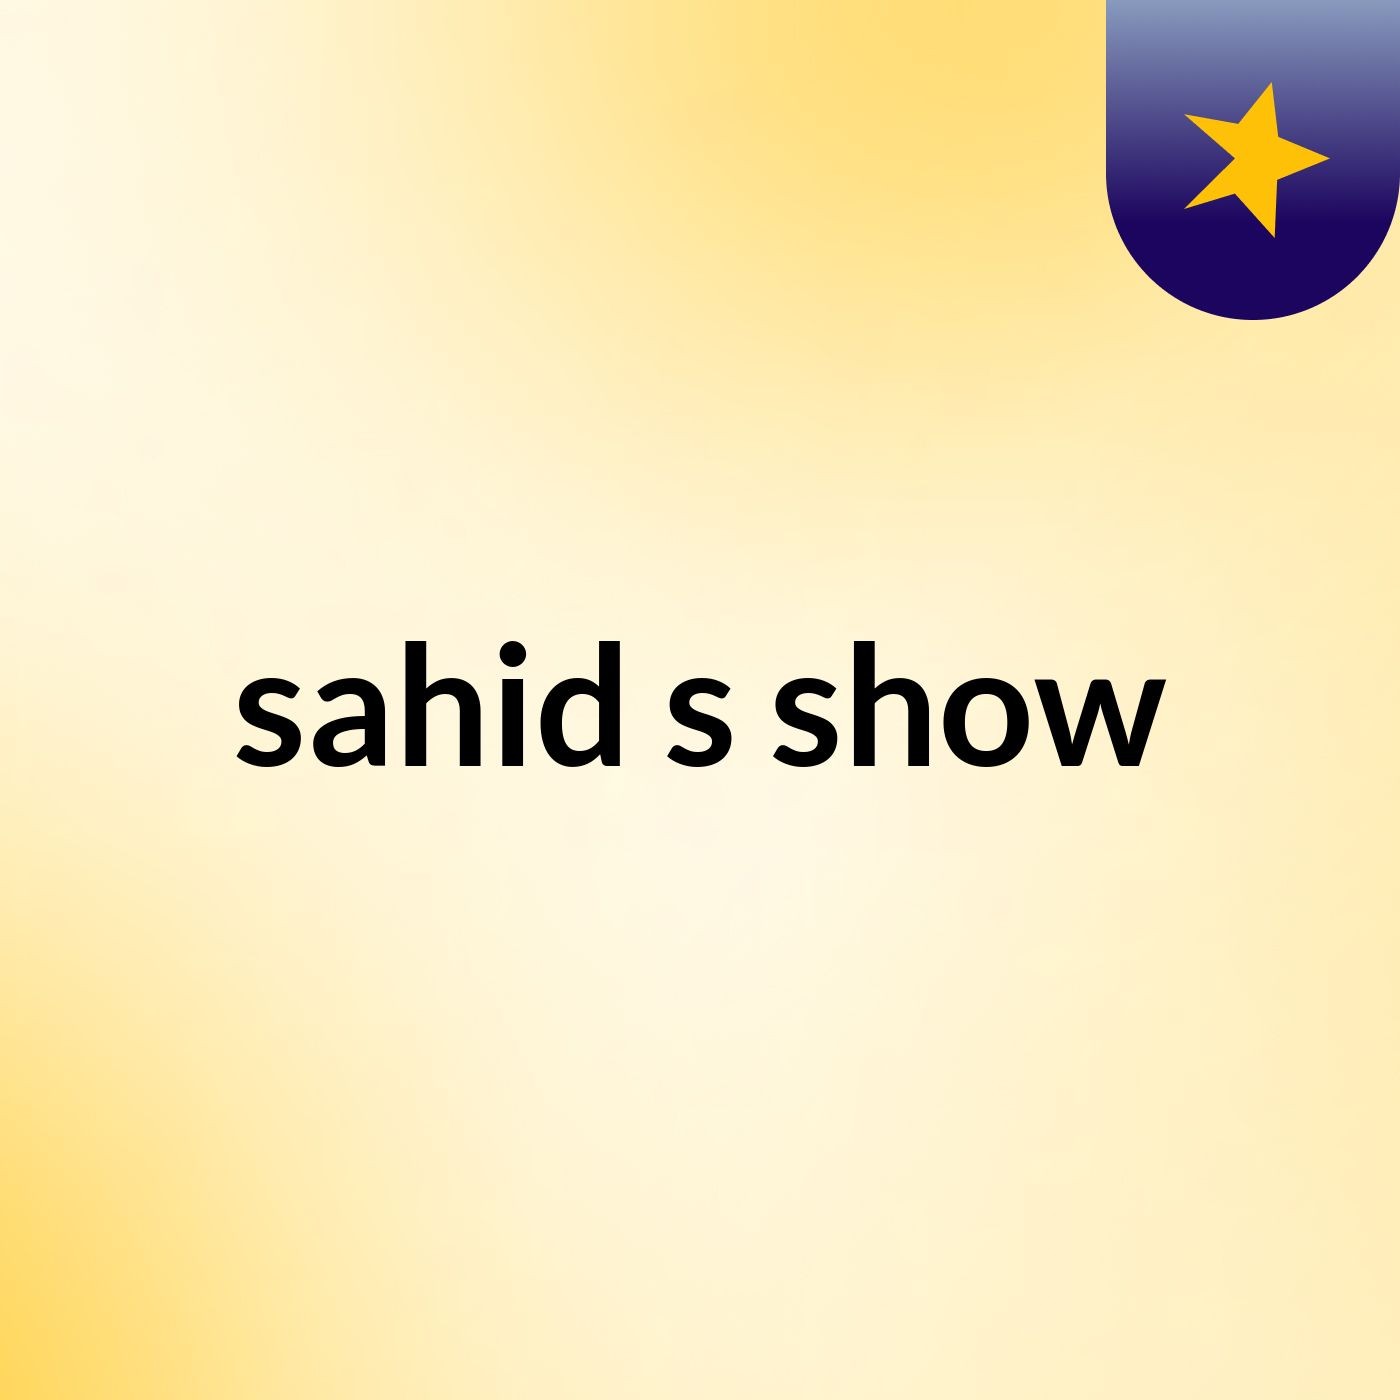 sahid's show